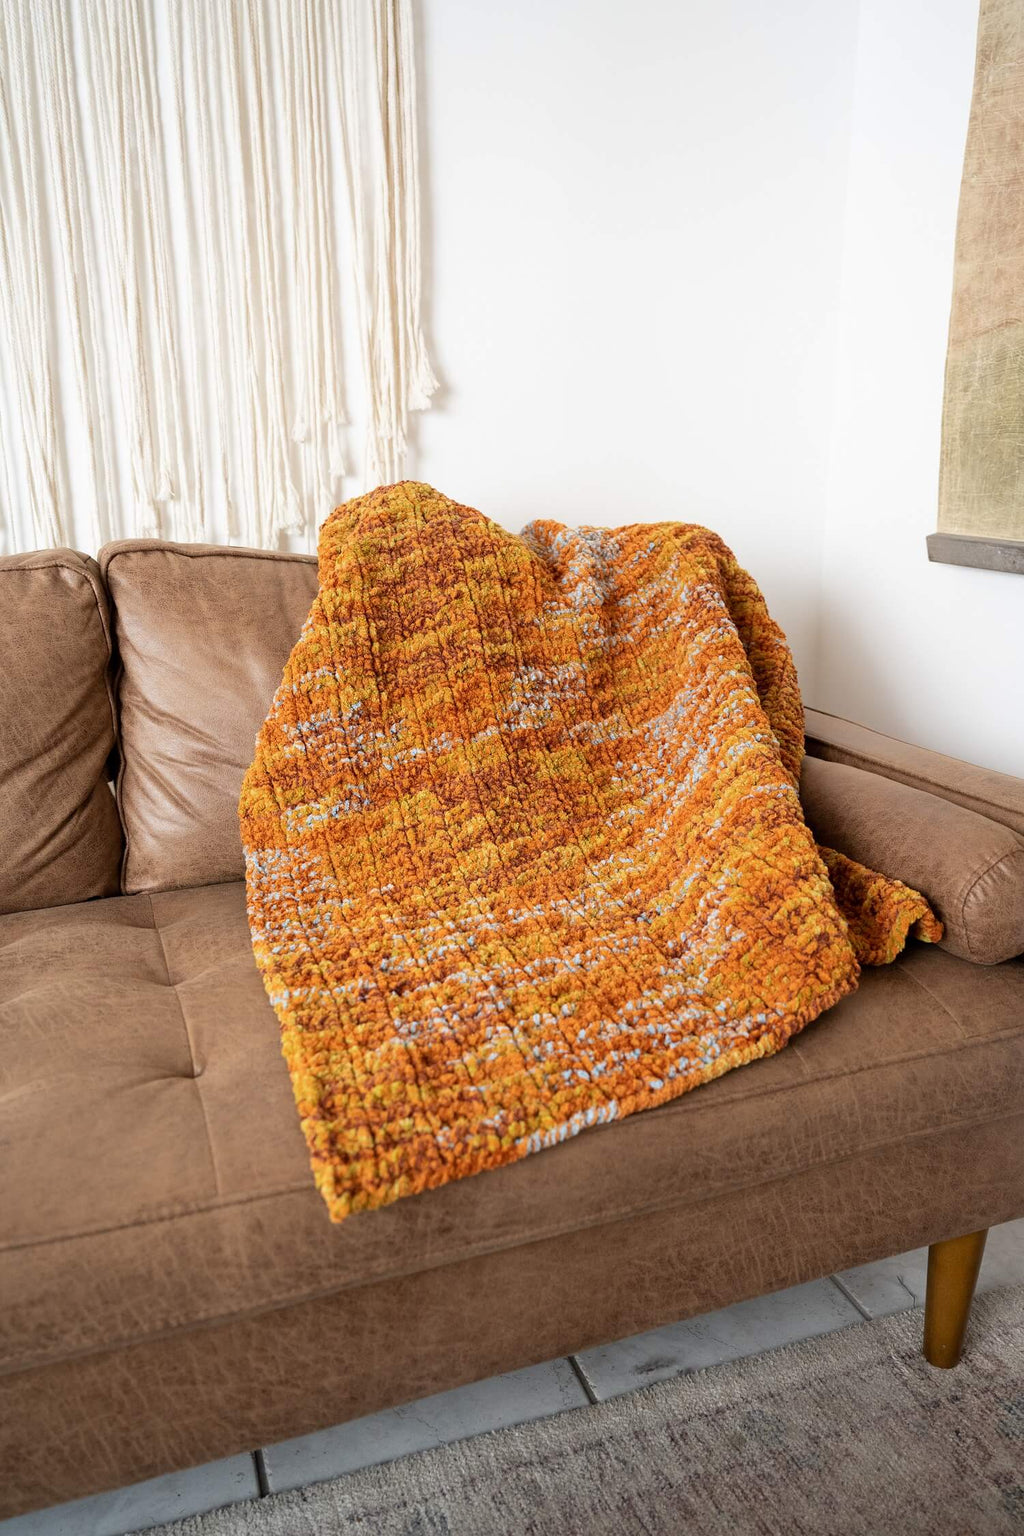 How To Make Bernat Velvet Knit Simple Texture Blanket Online